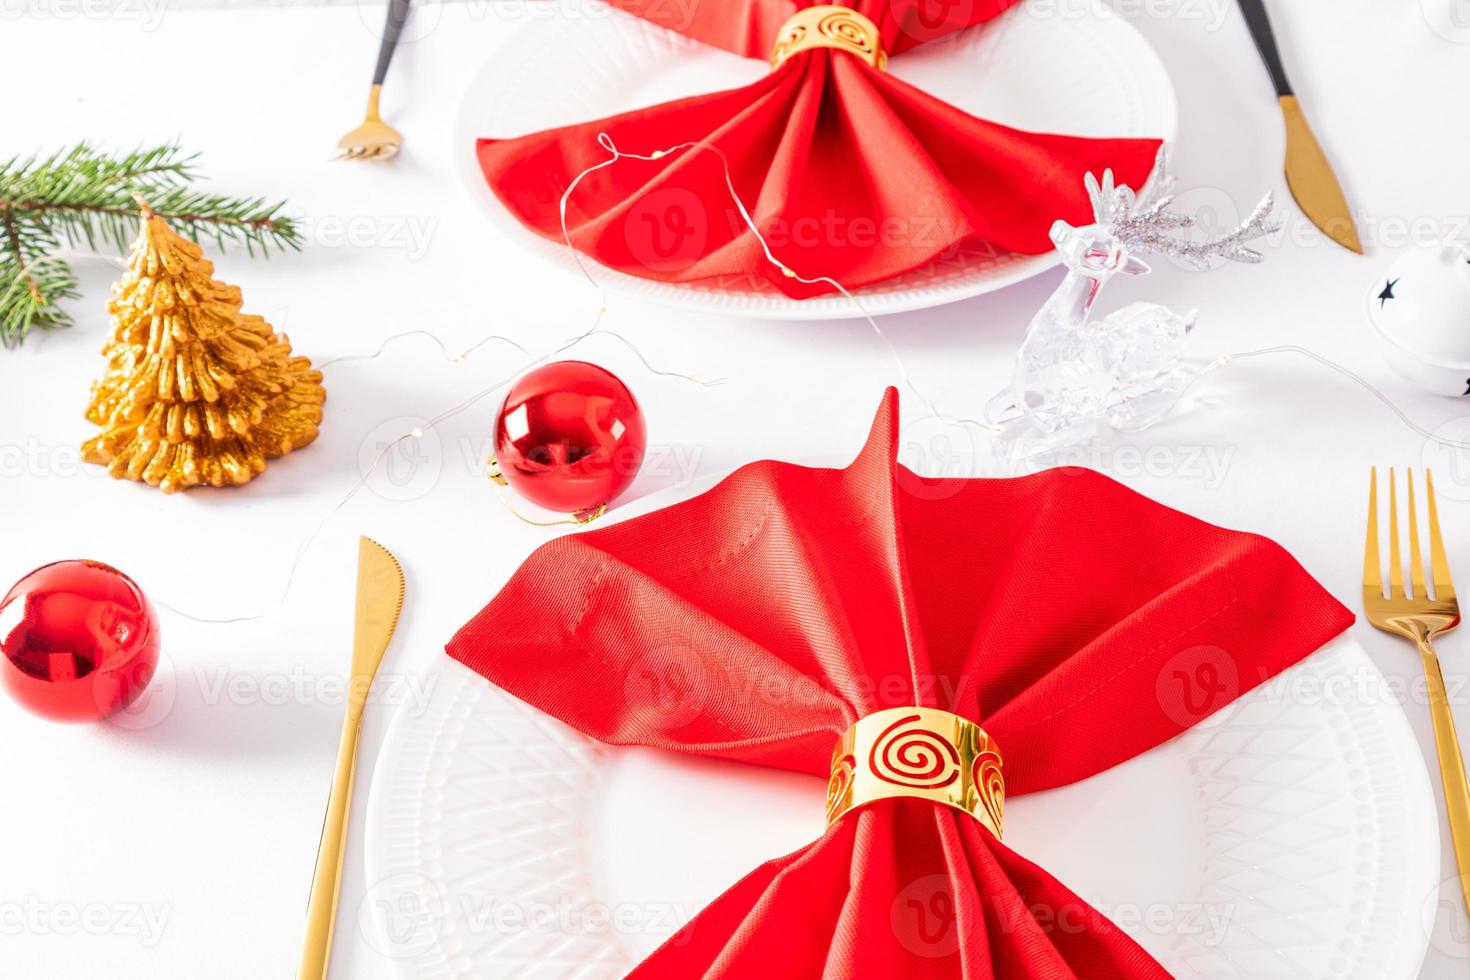 beau design moderne du service de noël de la table de fête. serviettes rouges pliées en éventail avec décorations sur assiettes blanches. photo